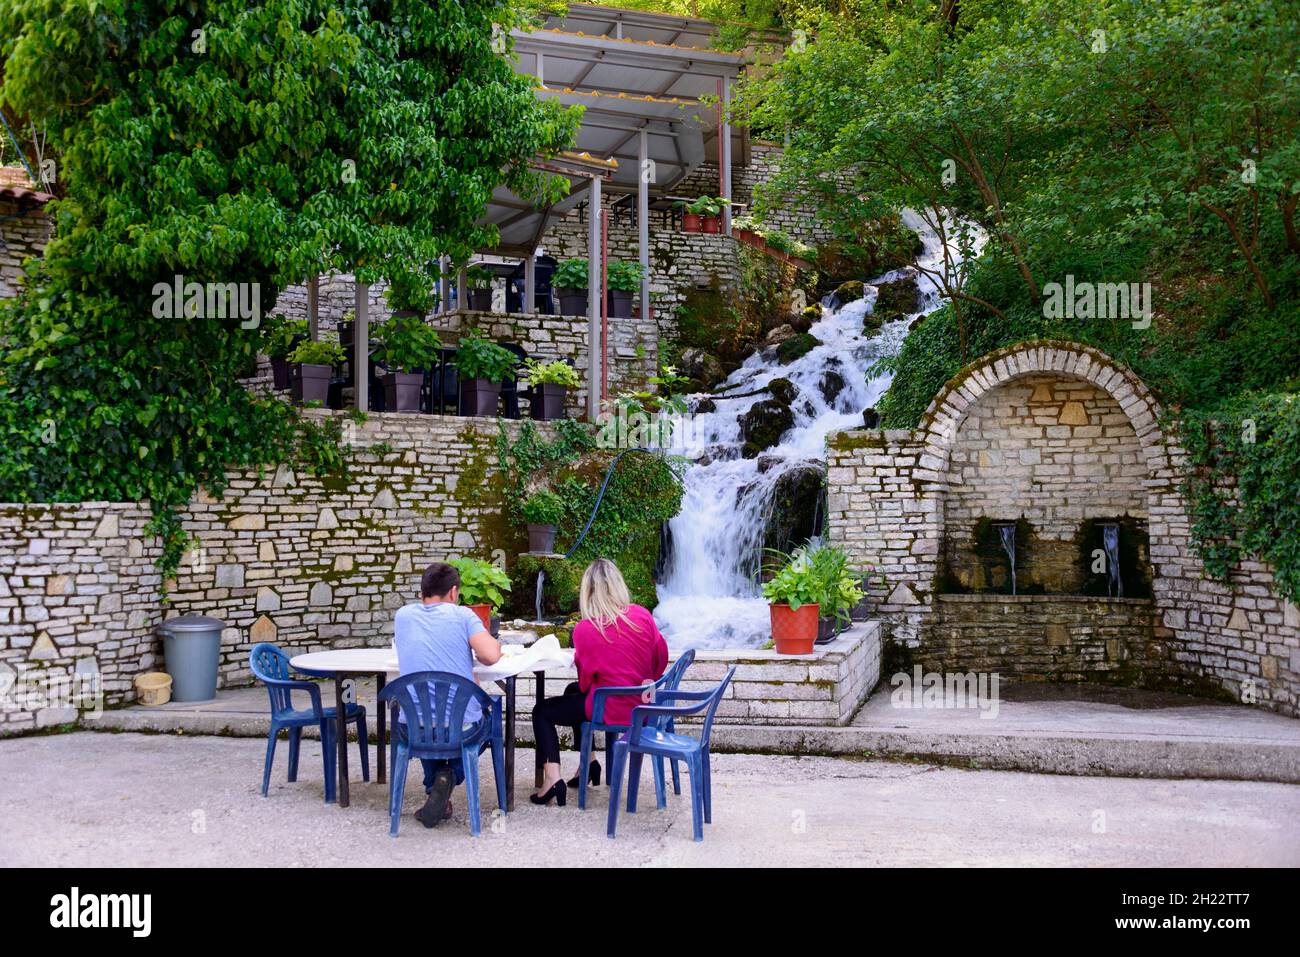 Restaurant au printemps, monument naturel d'eau froide, Uji i Ftothe, Albanie Banque D'Images